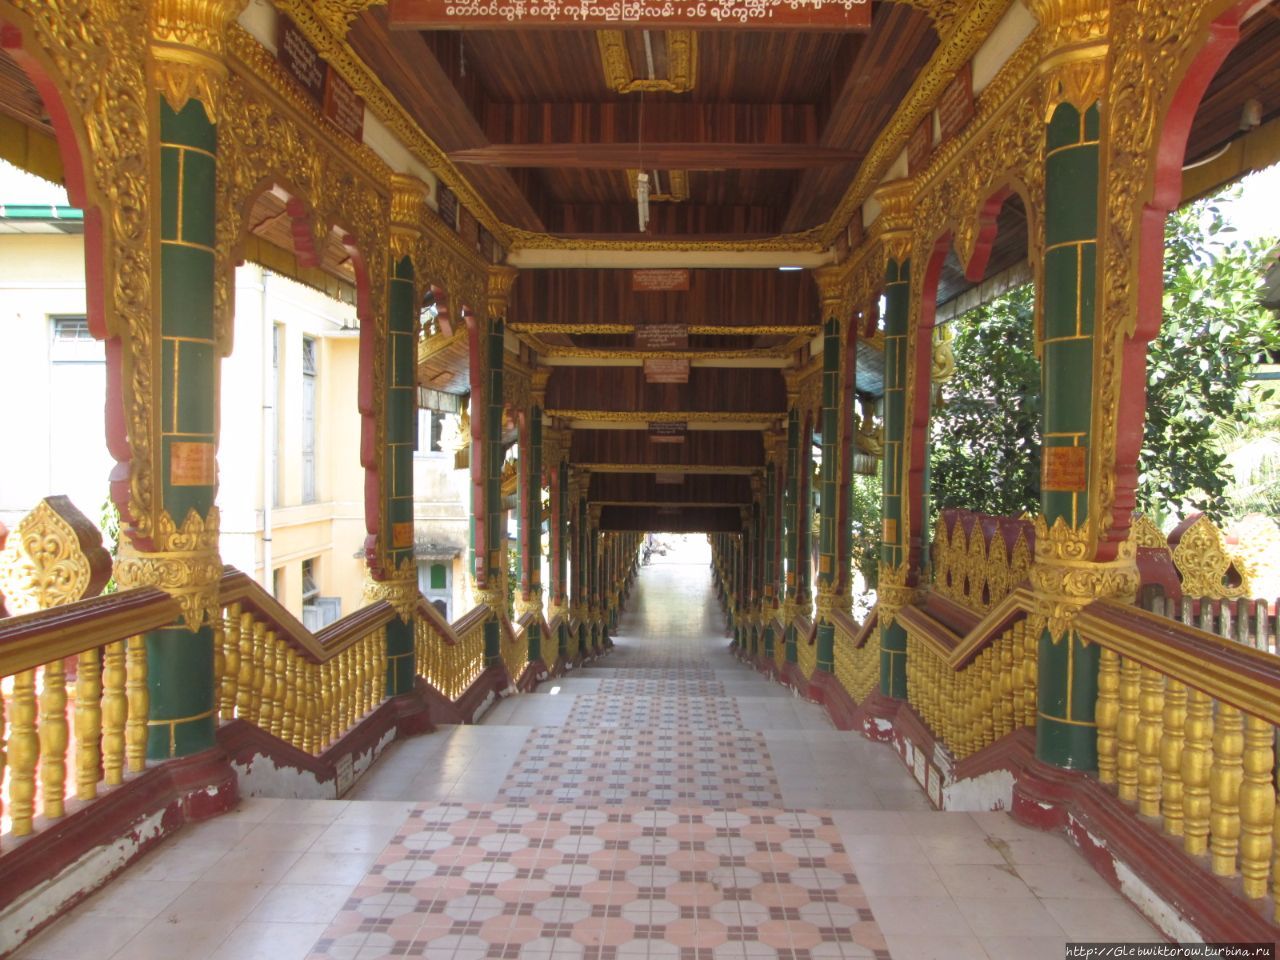 Миасекхон пагода / Myasekhon Pagoda